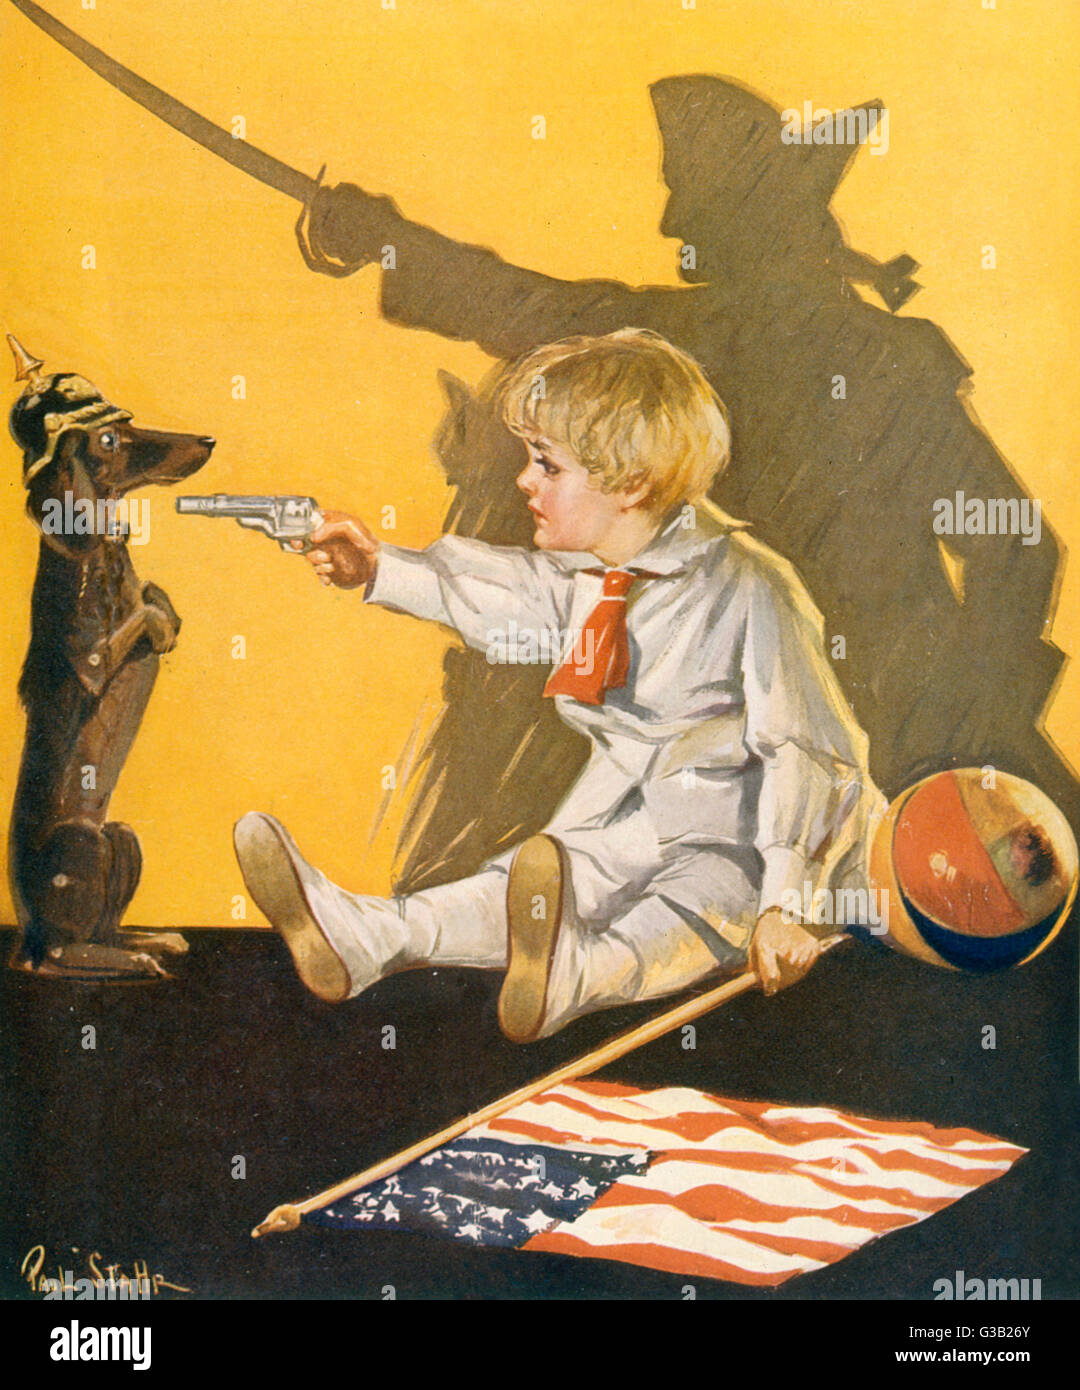 WW1 ZEICHENTRICKFILM/JUNGE UND HUND Stockfoto